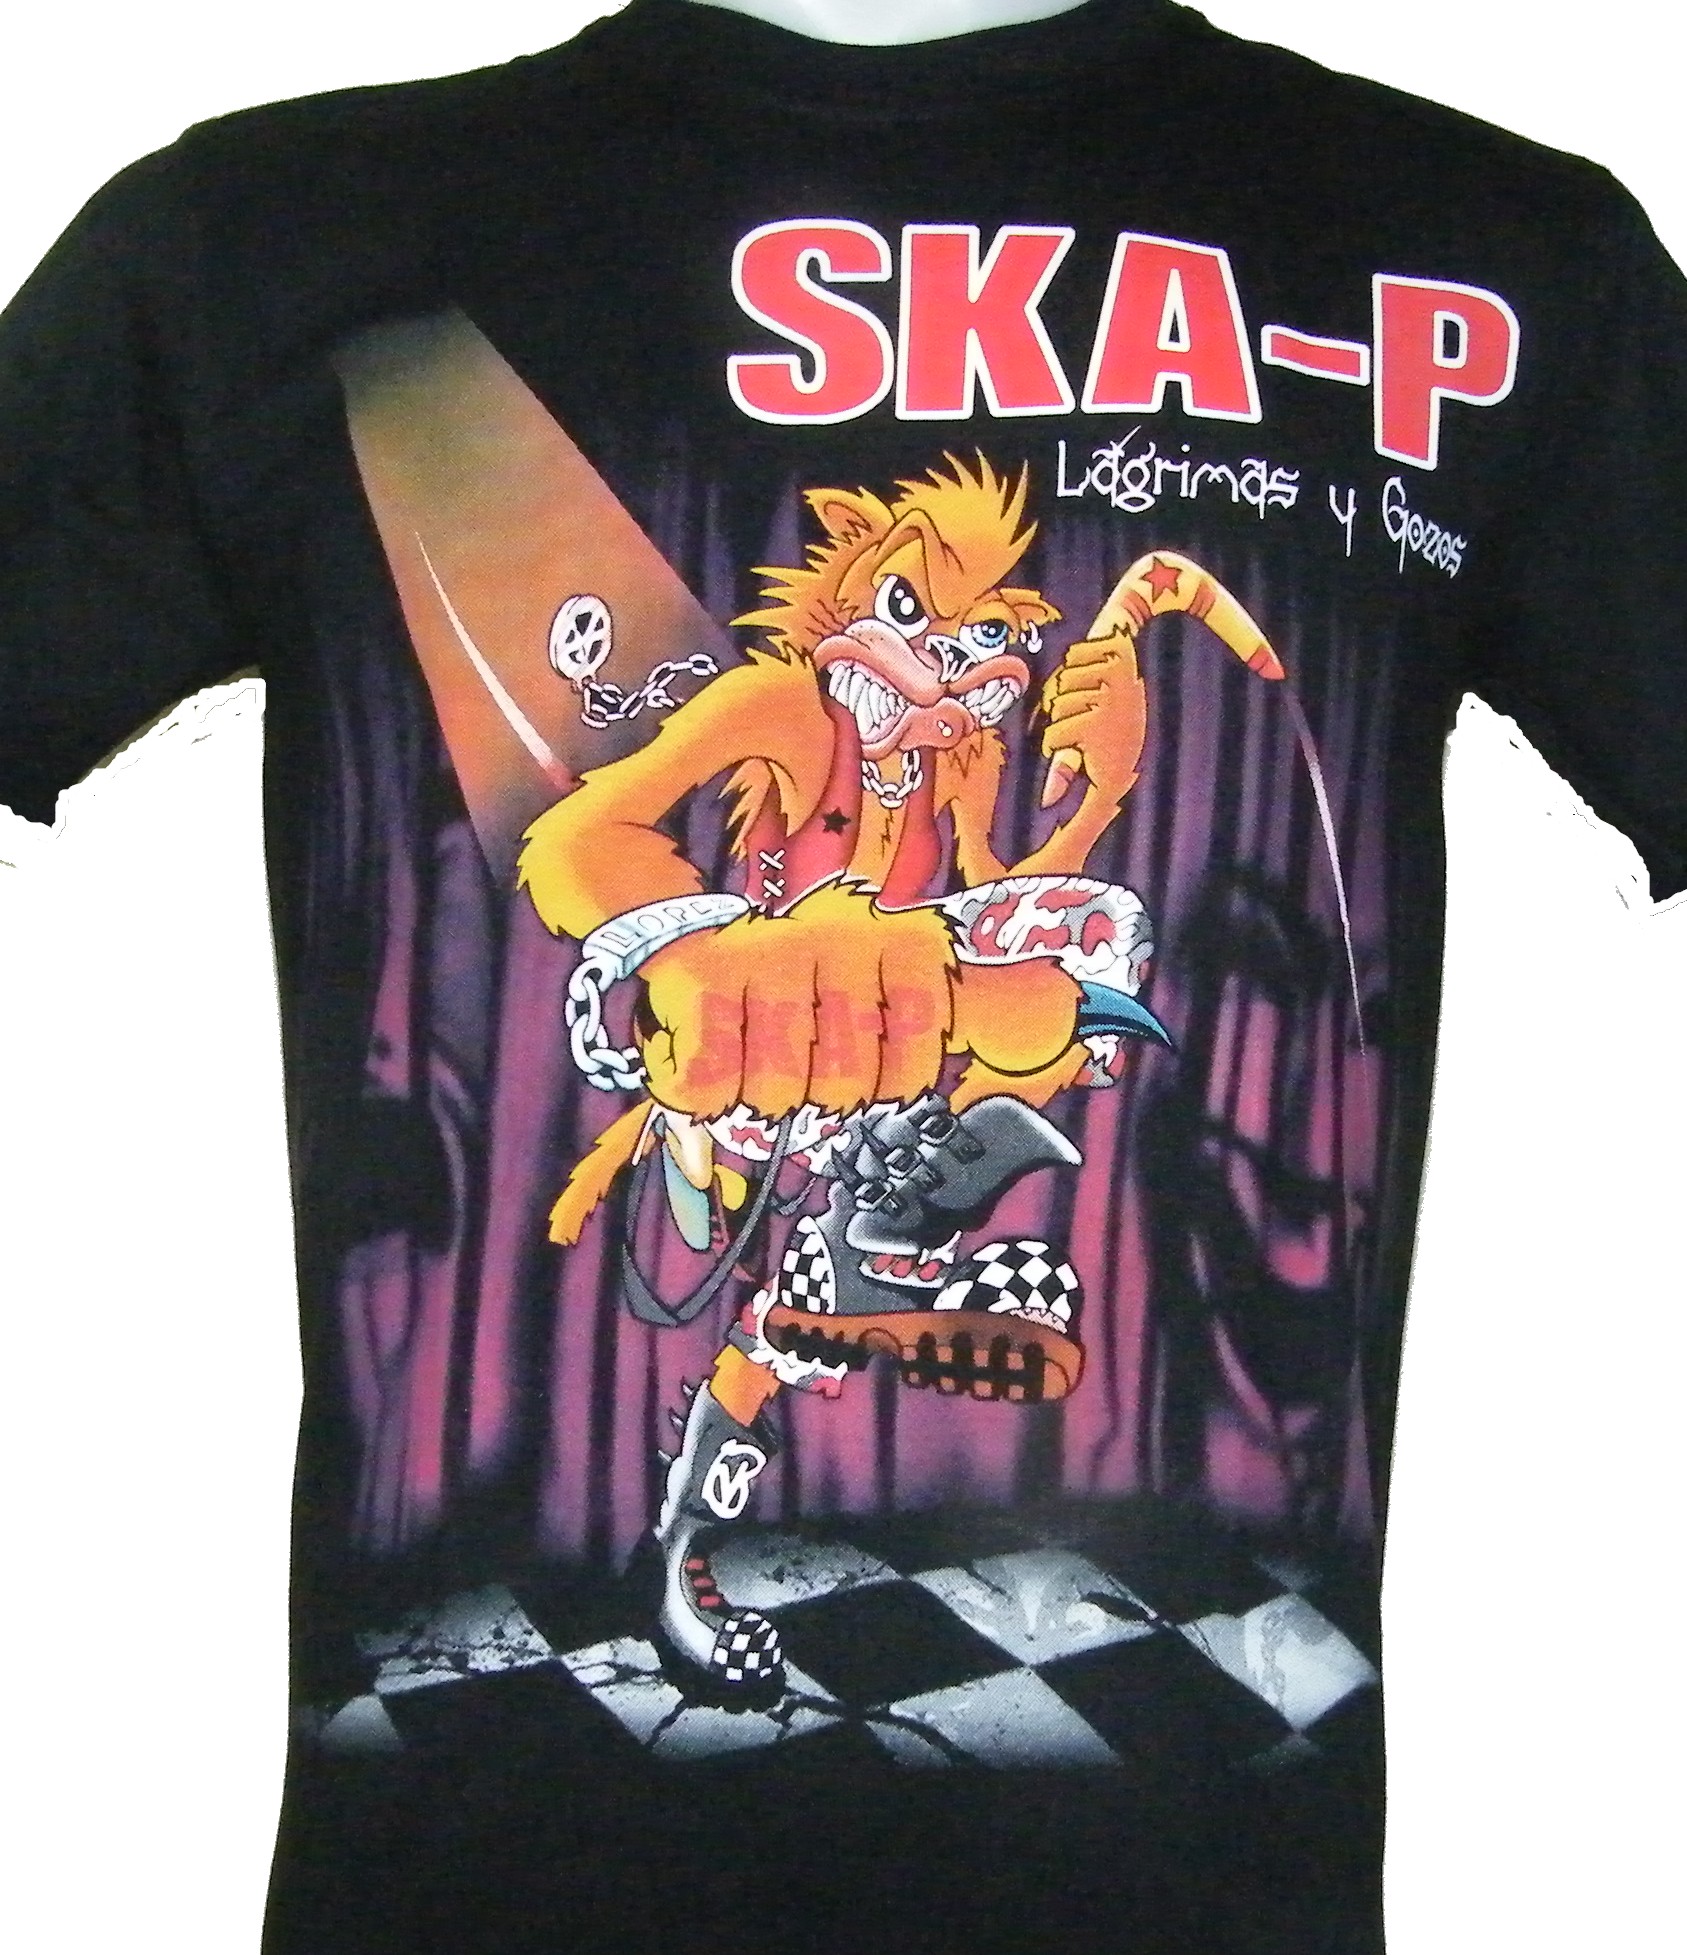 ska-p-t-shirt-size-m-roxxbkk